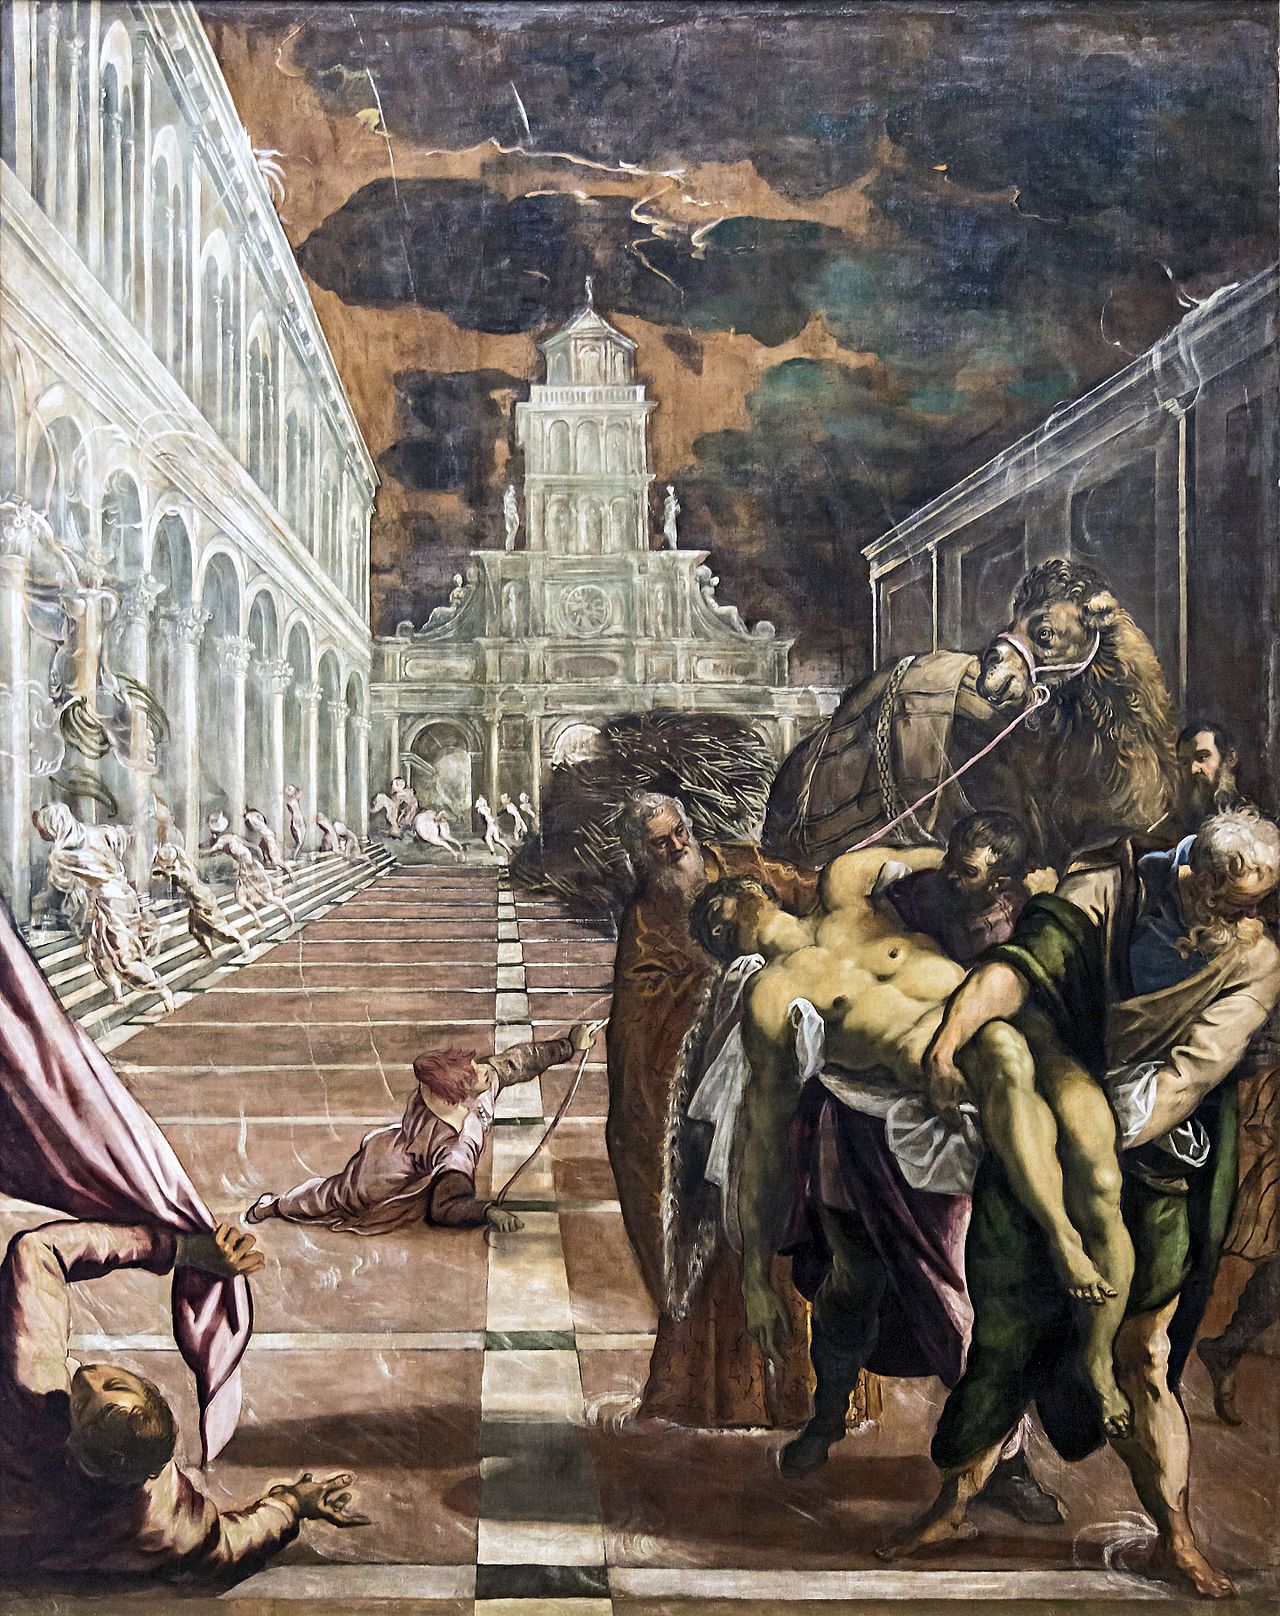 Illustration um Thema "Kamel in der venezianischen Malerei"; Tintoretto